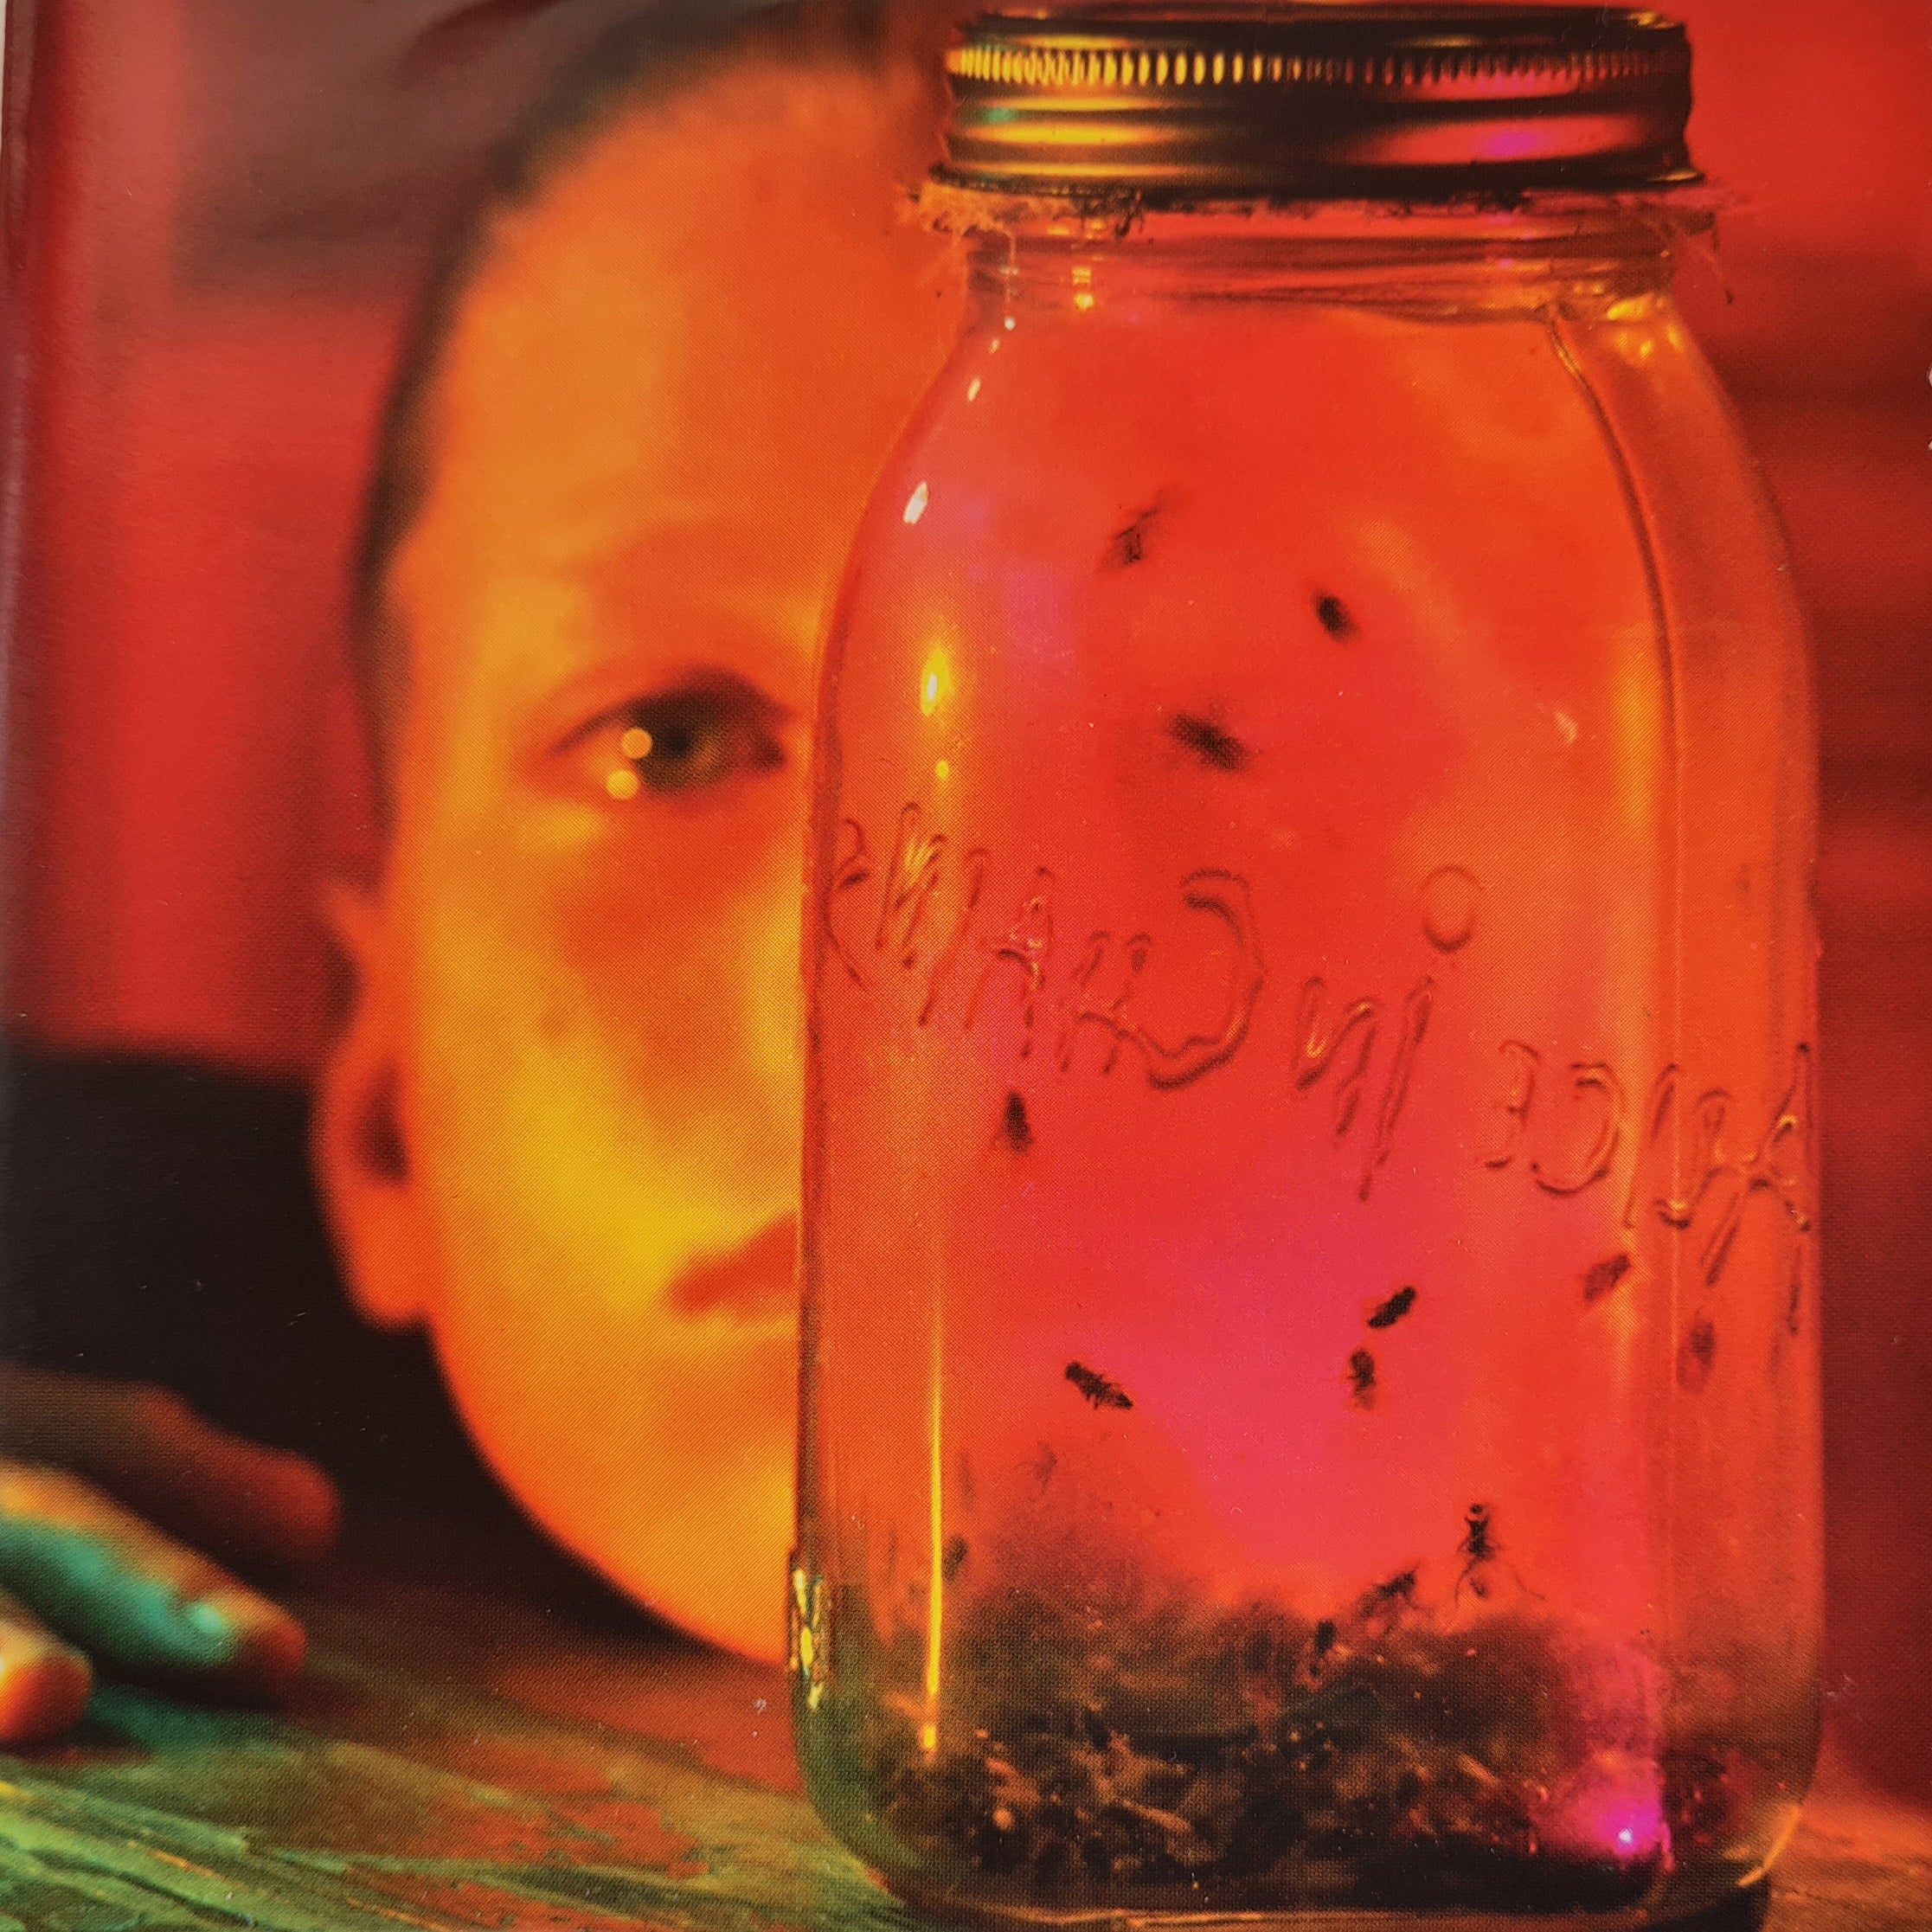 Alice in Chains - Jar of Flies - Sap (CD)